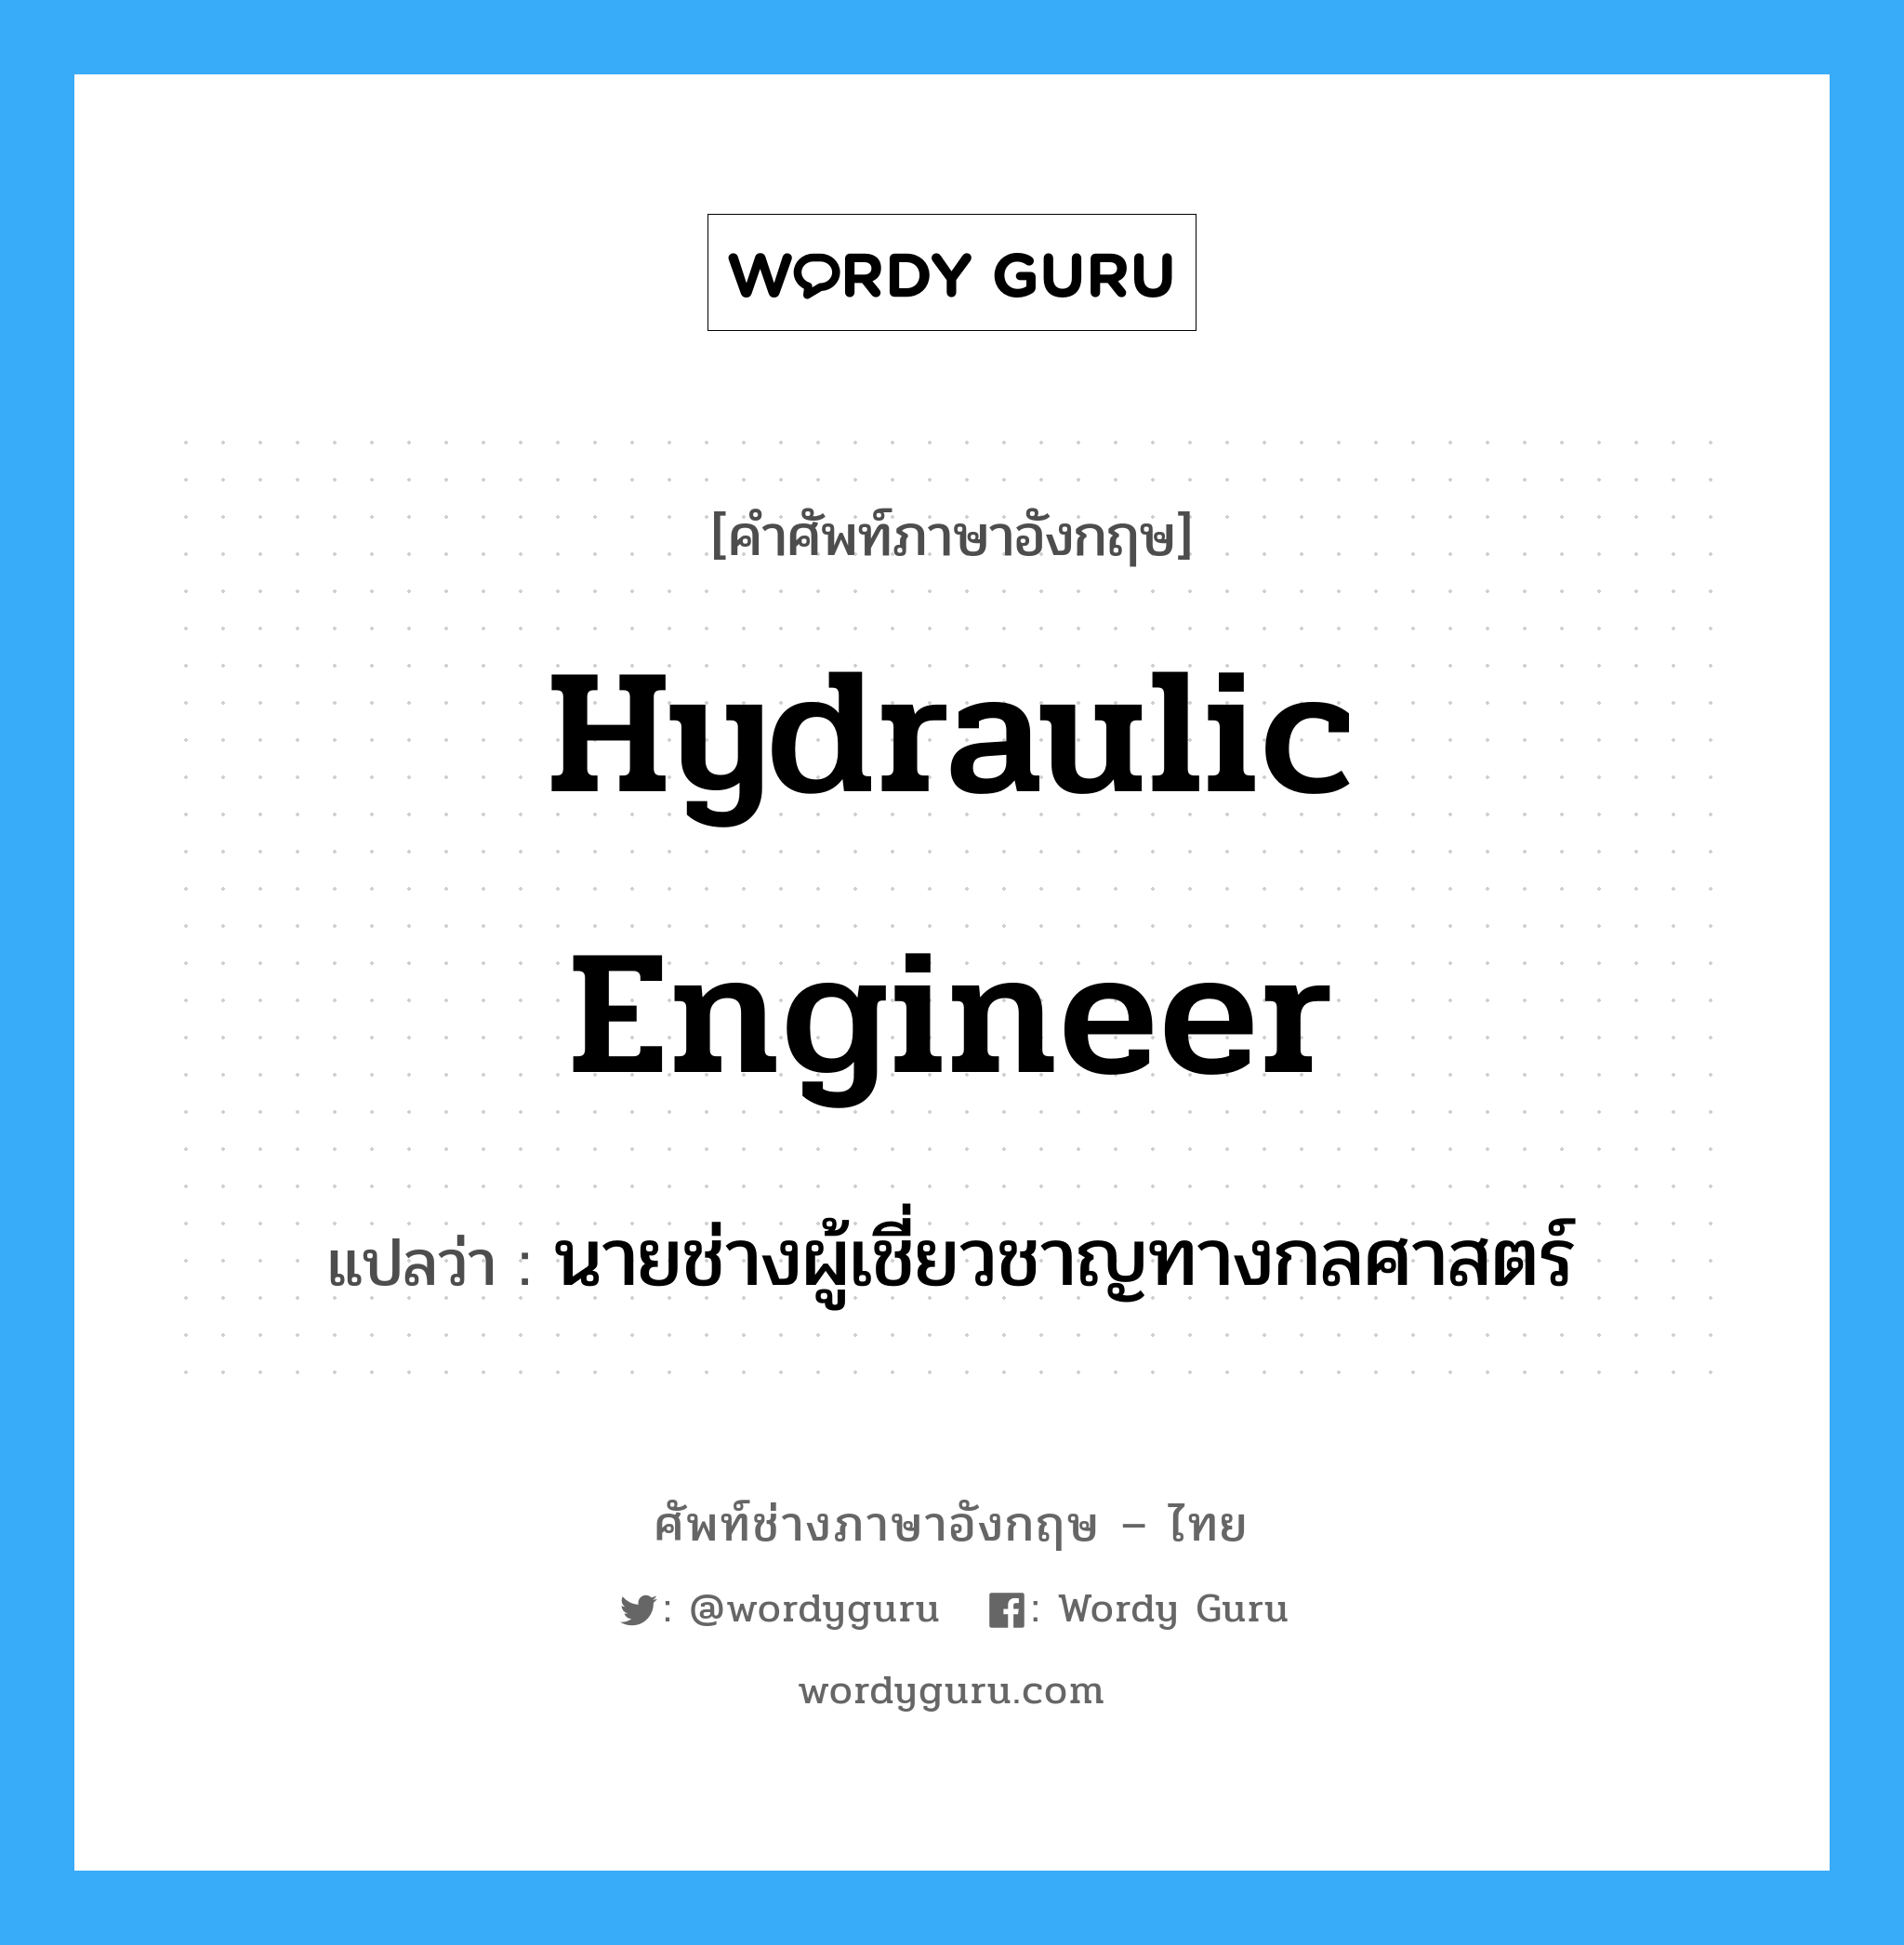 hydraulic engineer แปลว่า?, คำศัพท์ช่างภาษาอังกฤษ - ไทย hydraulic engineer คำศัพท์ภาษาอังกฤษ hydraulic engineer แปลว่า นายช่างผู้เชี่ยวชาญทางกลศาสตร์